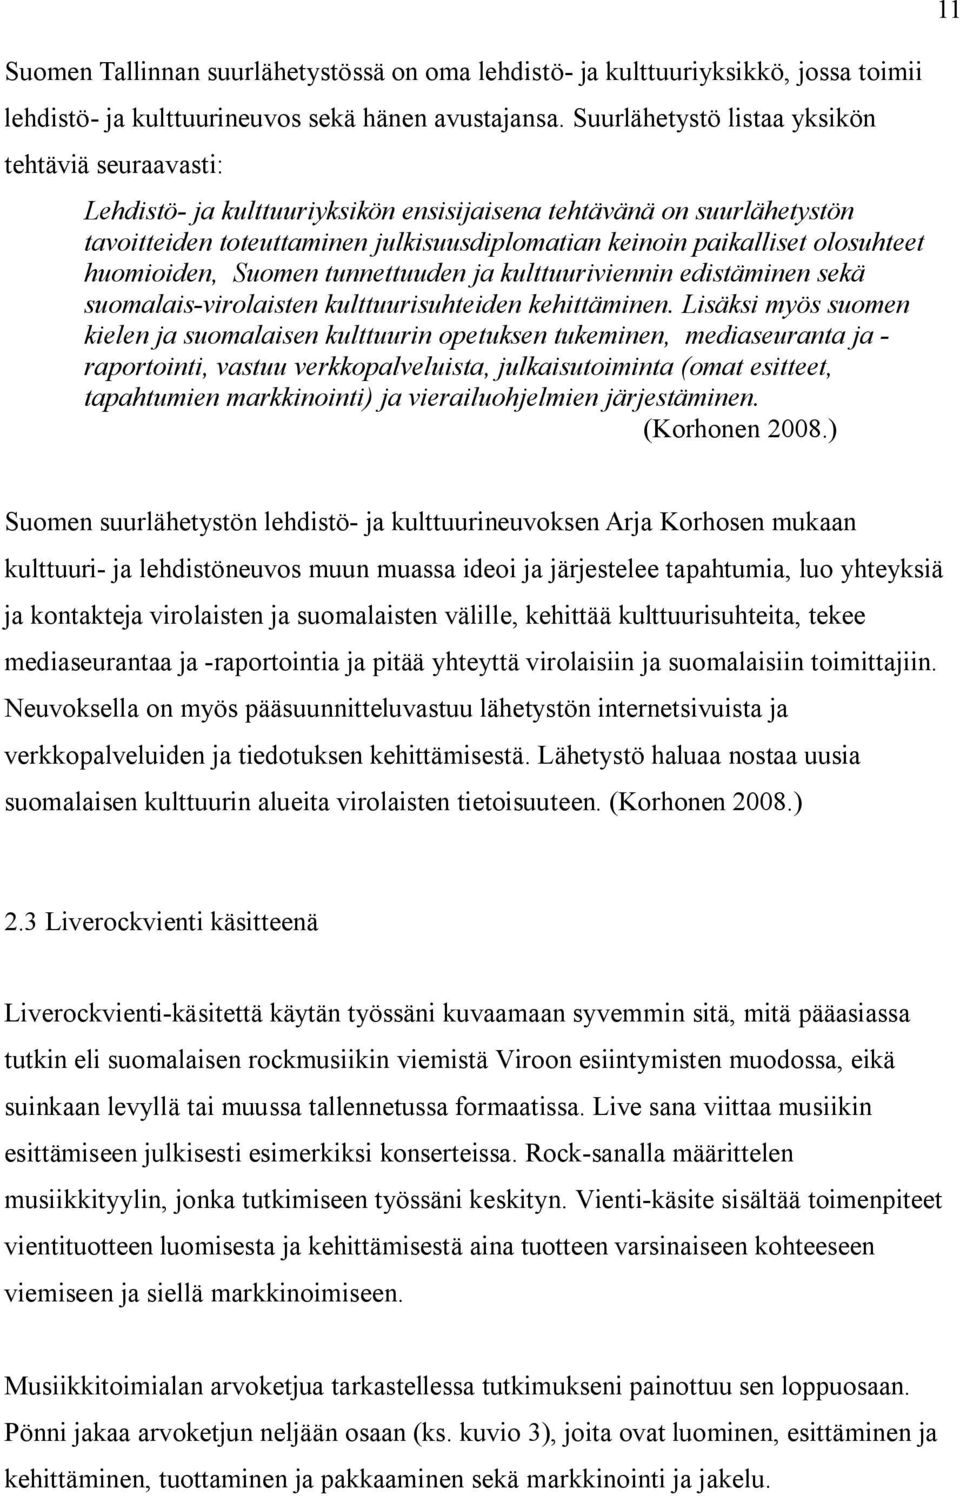 olosuhteet huomioiden, Suomen tunnettuuden ja kulttuuriviennin edistäminen sekä suomalais-virolaisten kulttuurisuhteiden kehittäminen.